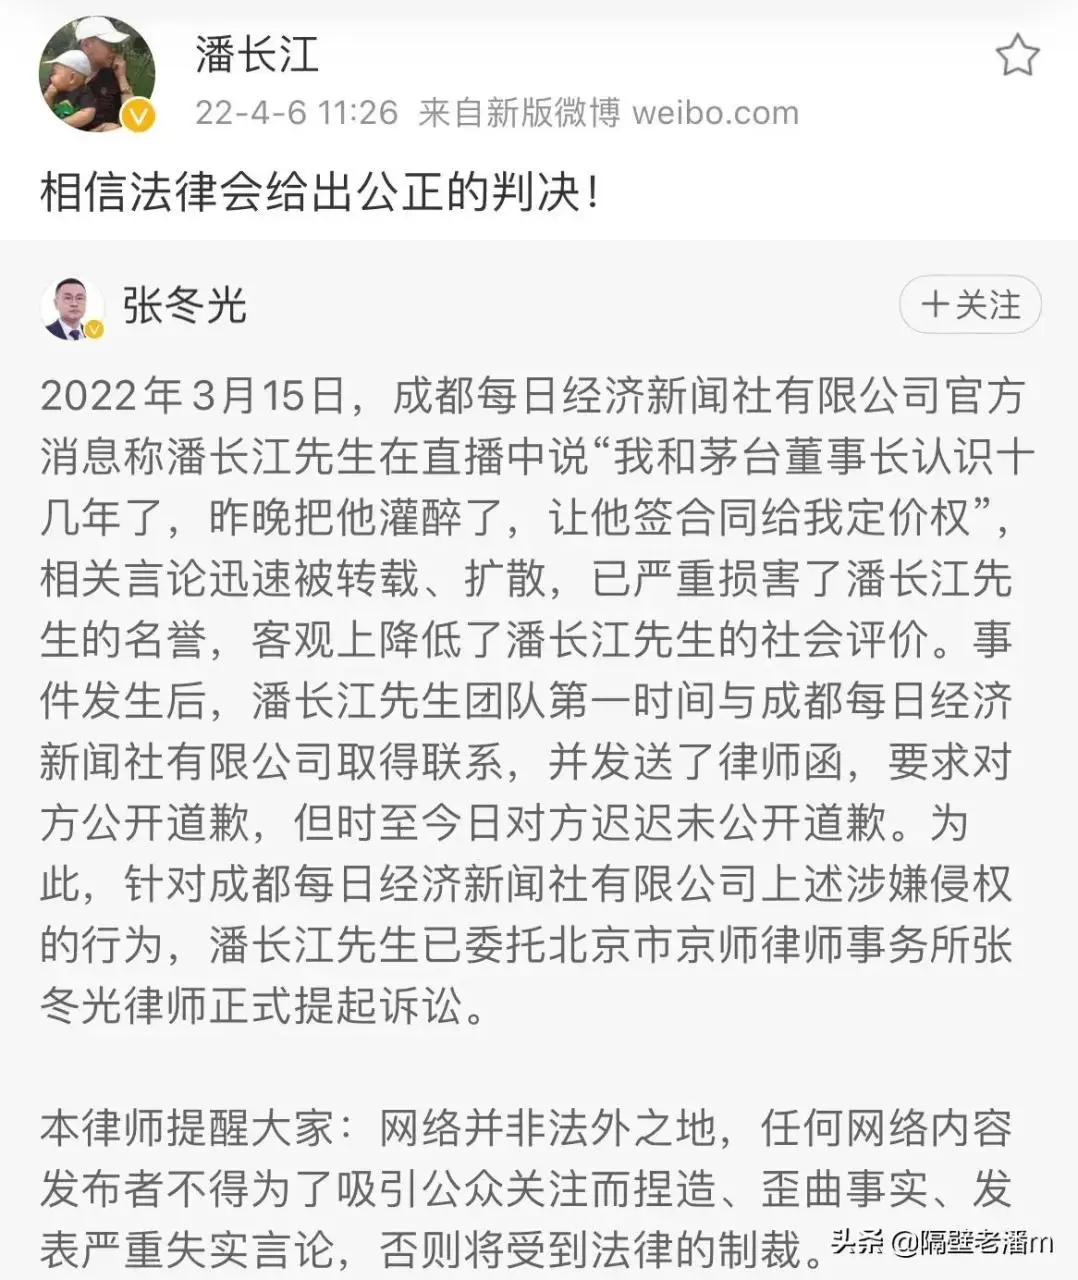 潘长江起诉媒体的目的并不是为了胜诉…